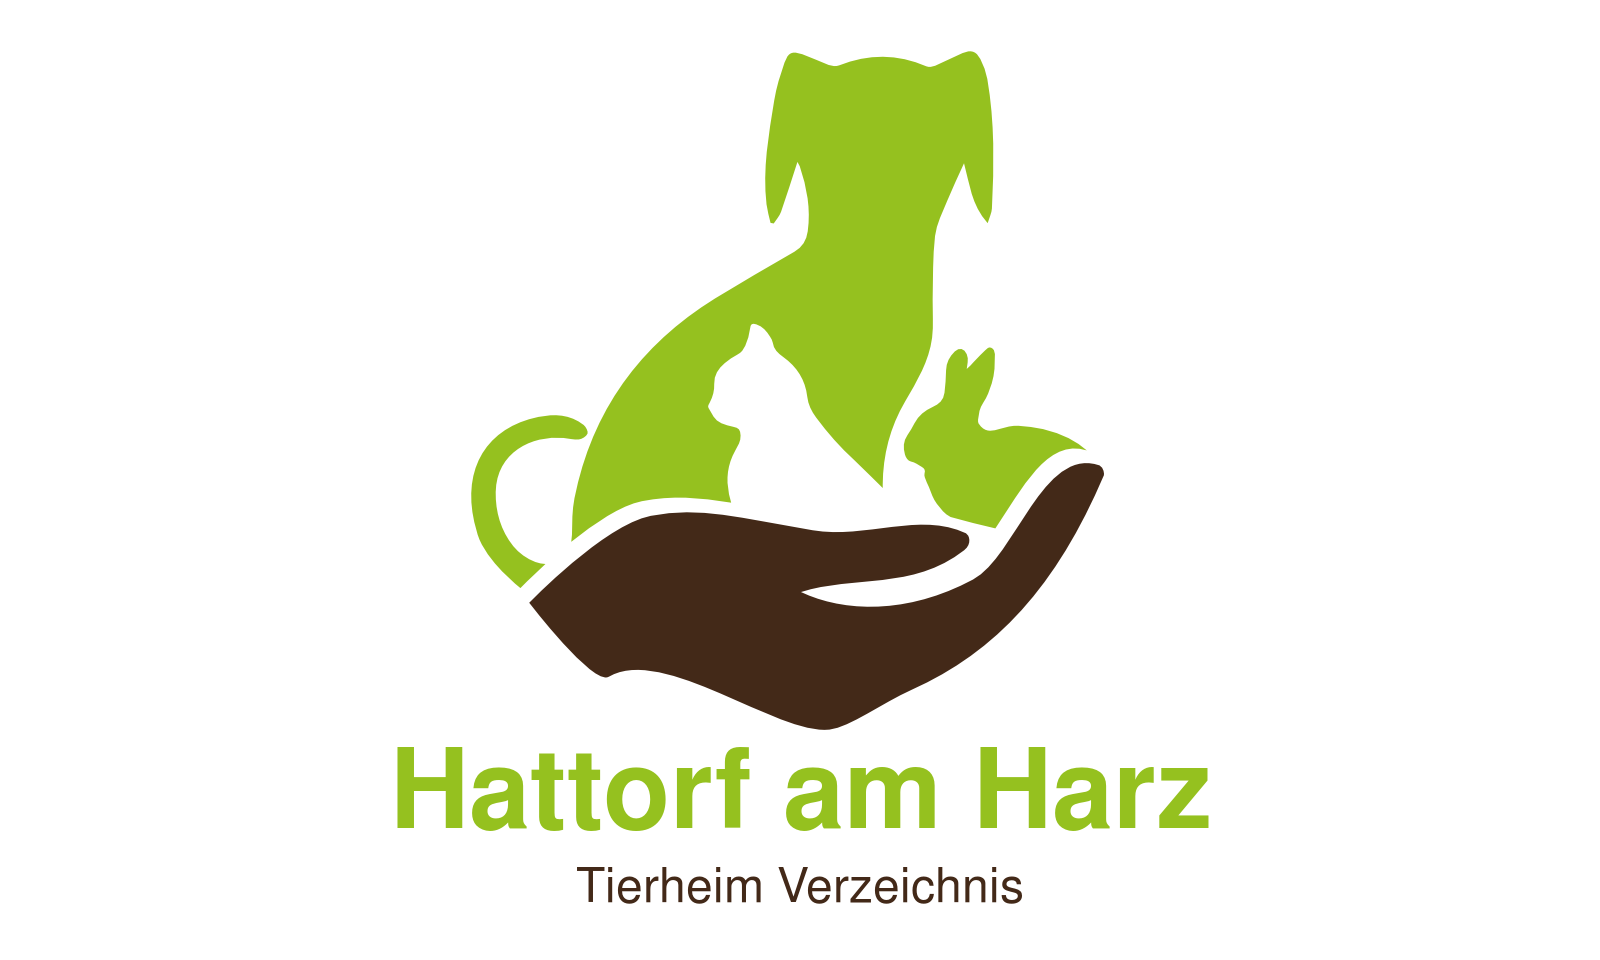 Tierheim Hattorf am Harz